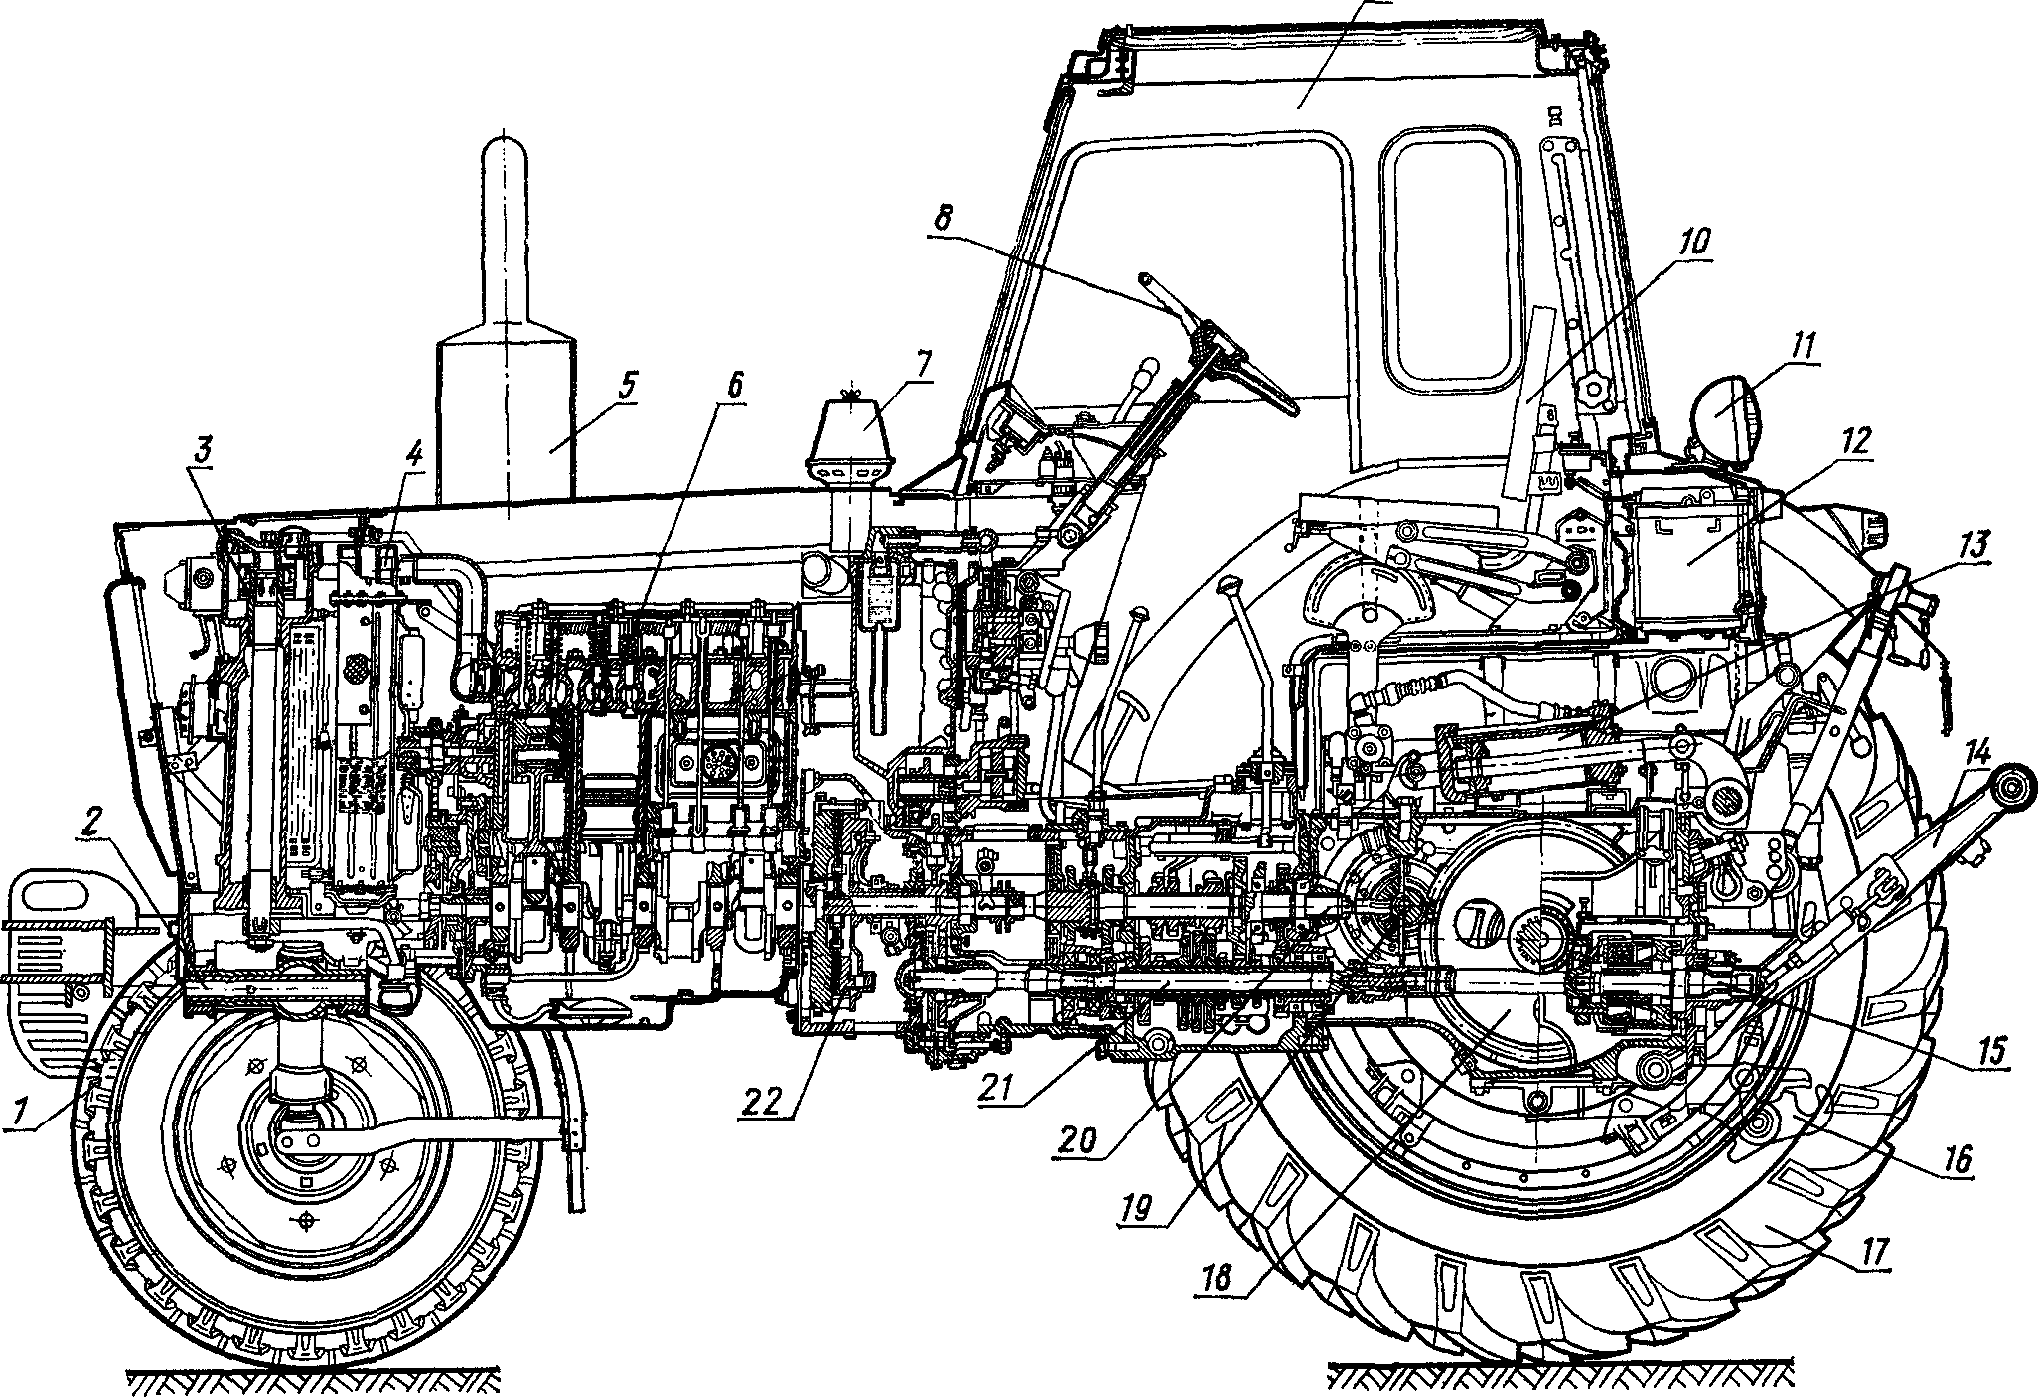 Трактора мтз-80 — технические характеристики, видео, устройство